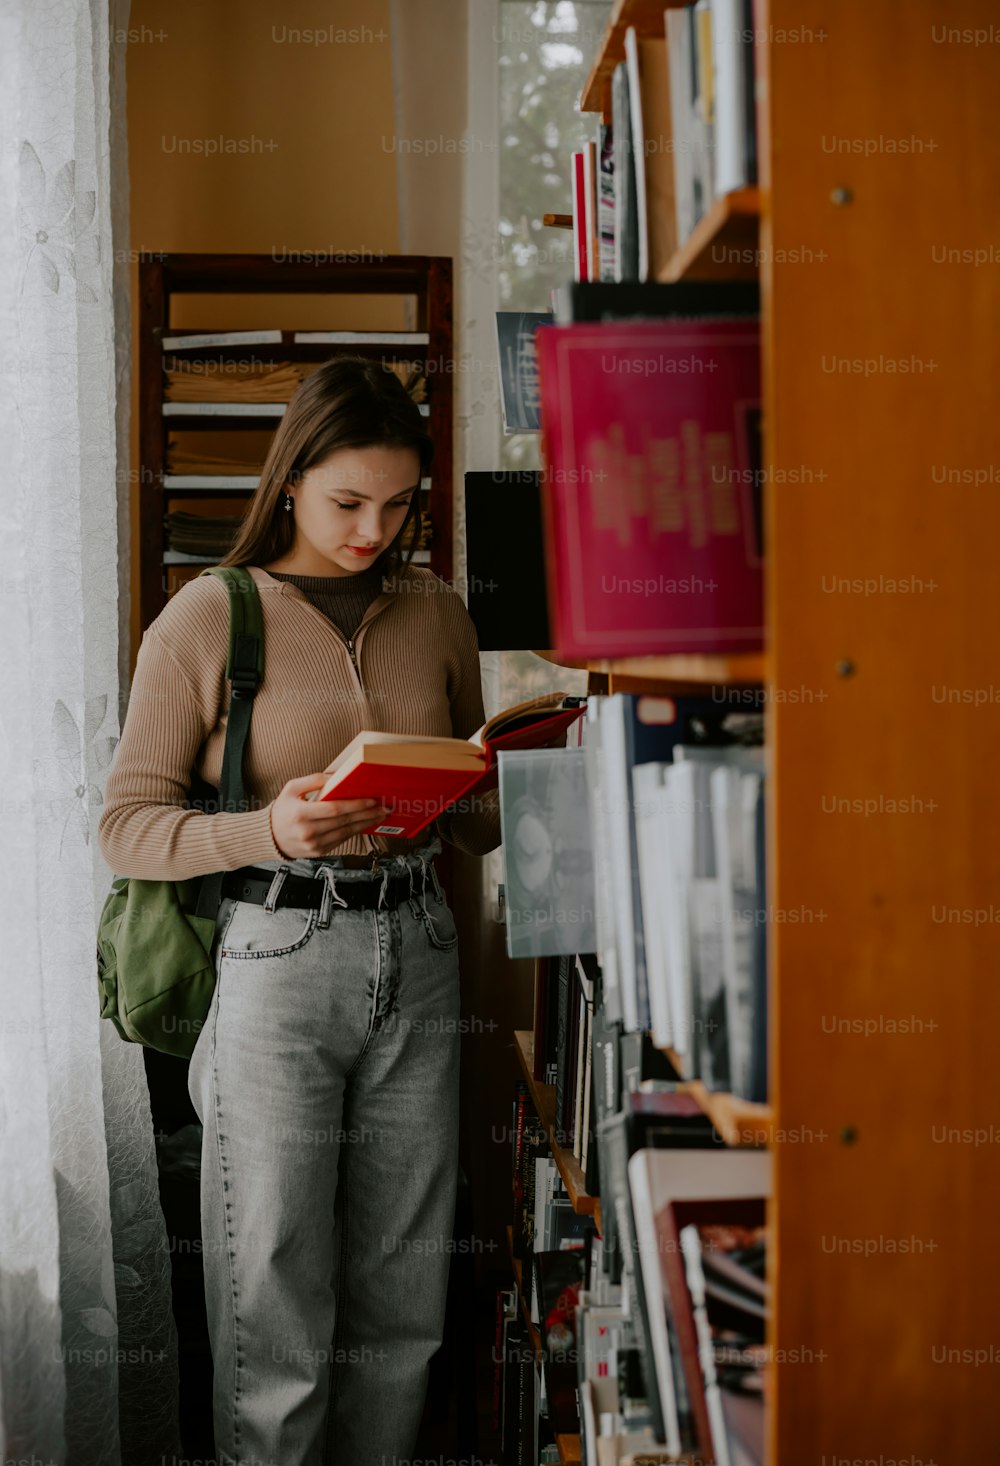 Une femme debout devant une étagère à livres